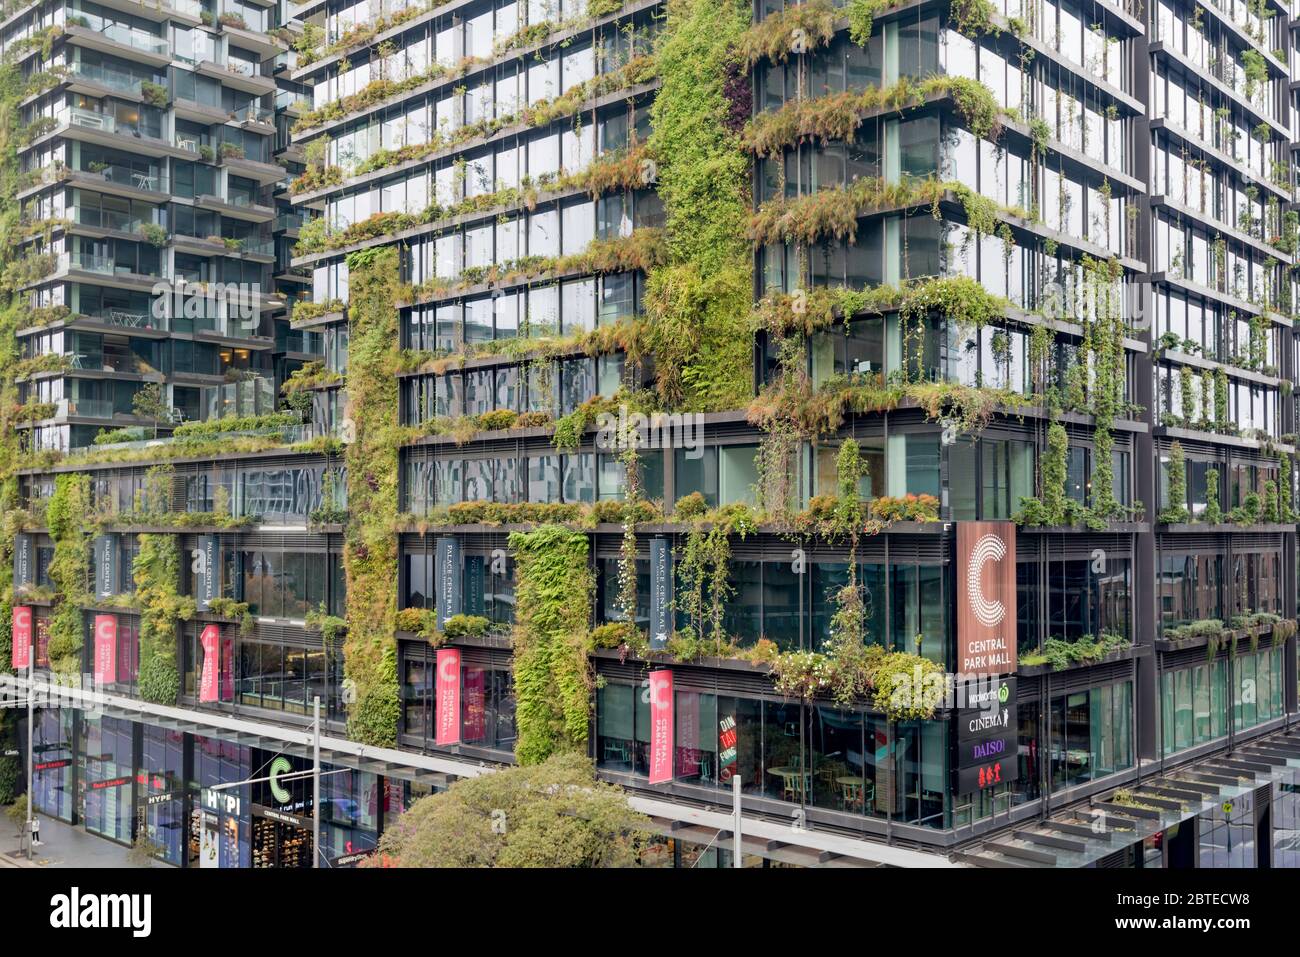 Gran jardín en One Central Park, el Jean Nouvel diseñó un bloque de apartamentos en Sydney cubierto de plantas nativas australianas. Foto de stock